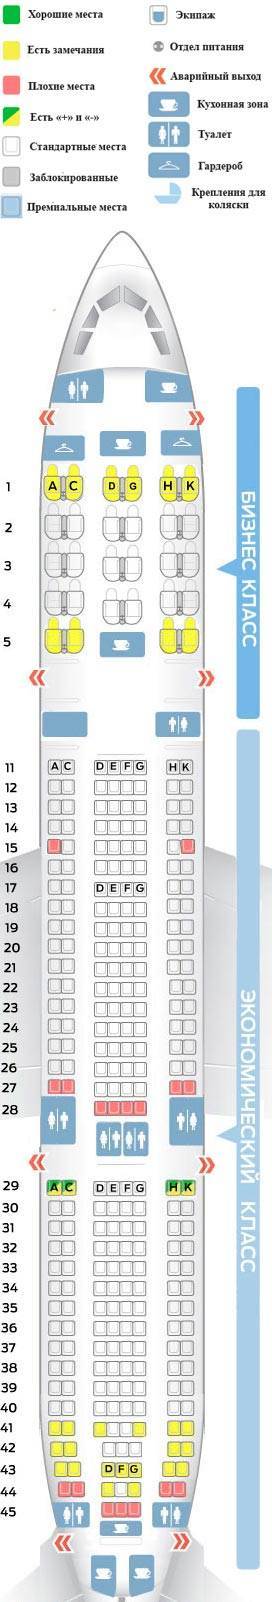 ✈ самолет ﻿airbus a330-300: нумерация мест в салоне, схема посадочных мест, лучшие места